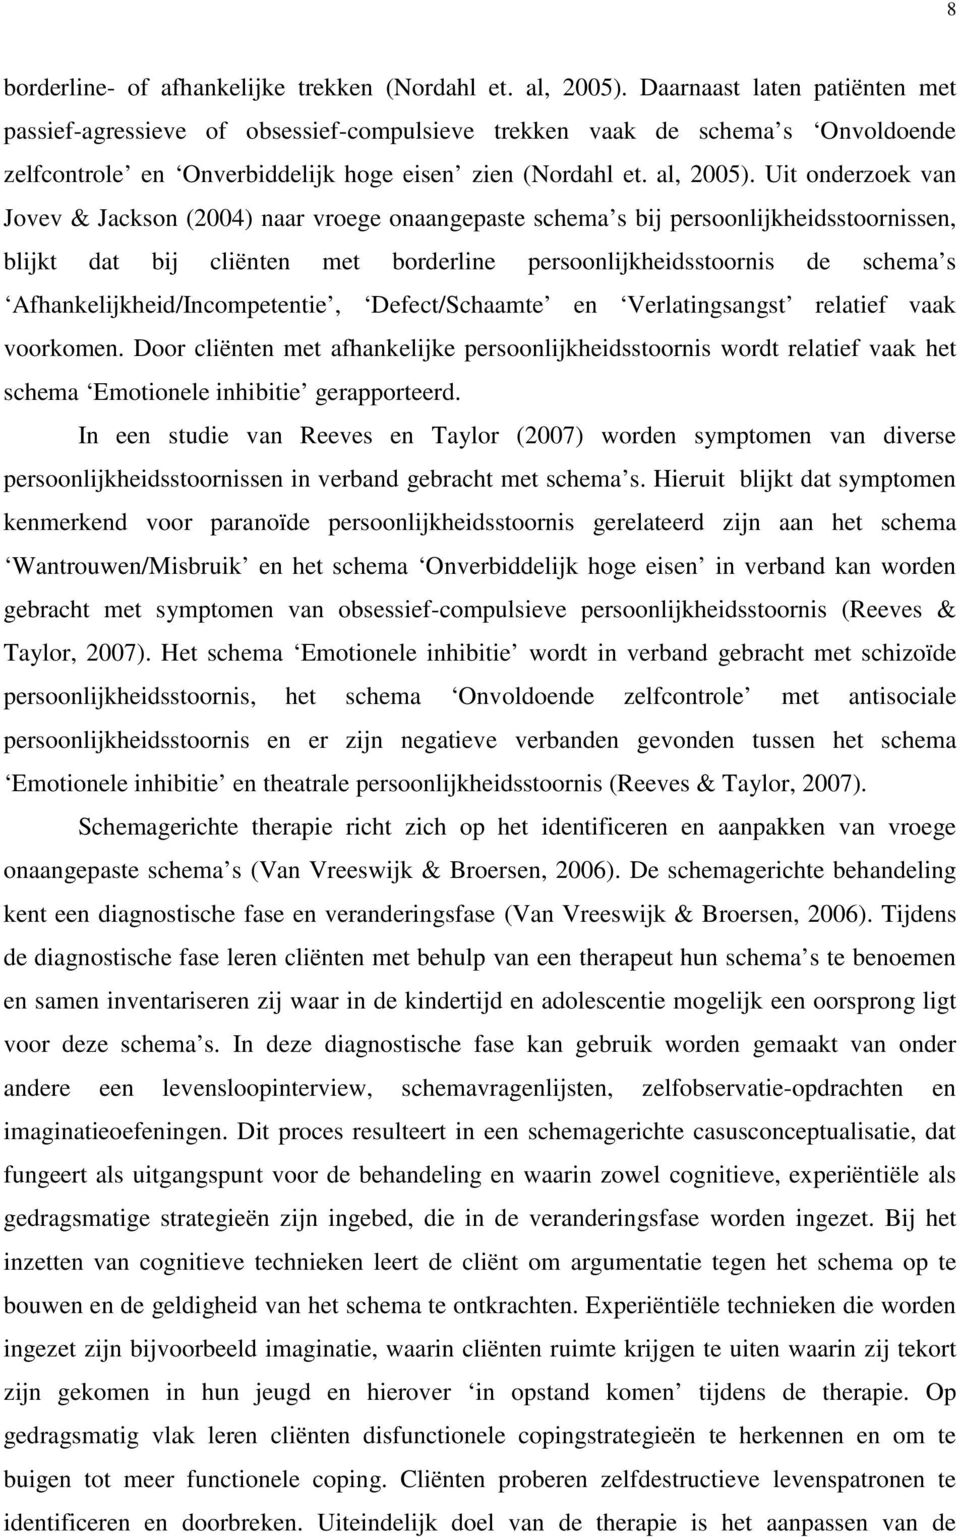 Uit onderzoek van Jovev & Jackson (2004) naar vroege onaangepaste schema s bij persoonlijkheidsstoornissen, blijkt dat bij cliënten met borderline persoonlijkheidsstoornis de schema s